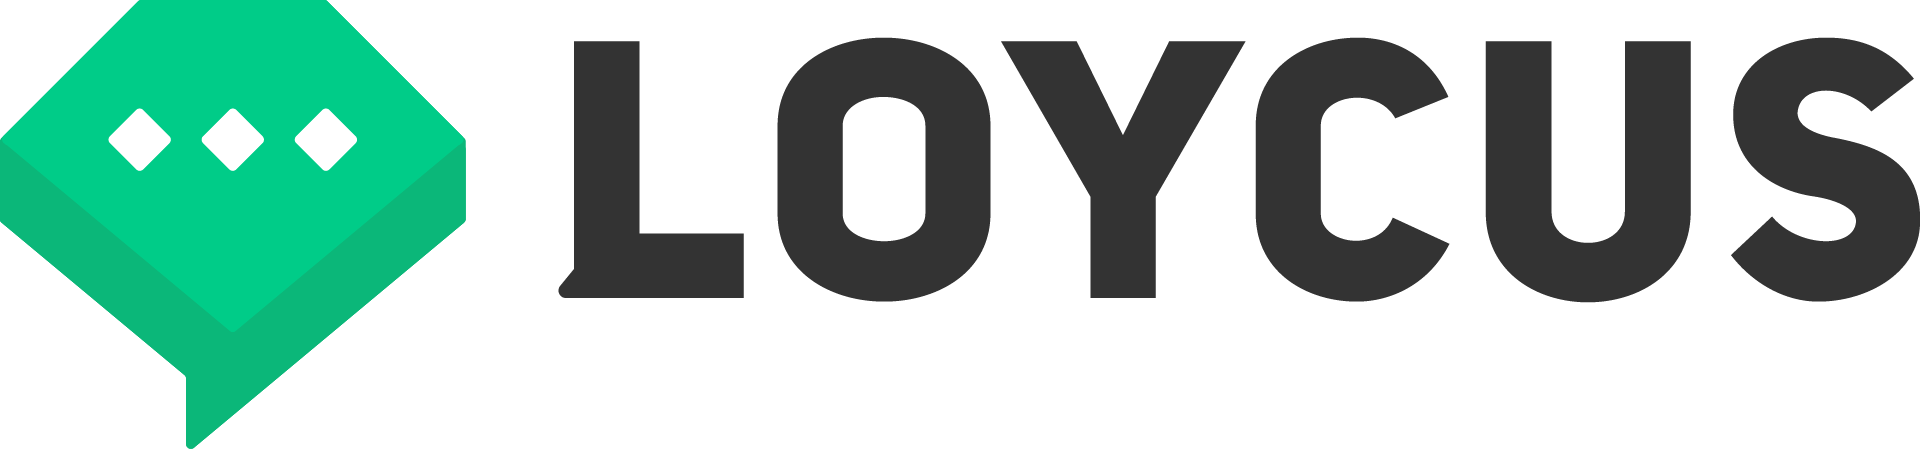 LOYCUS（ロイカス）のロゴ